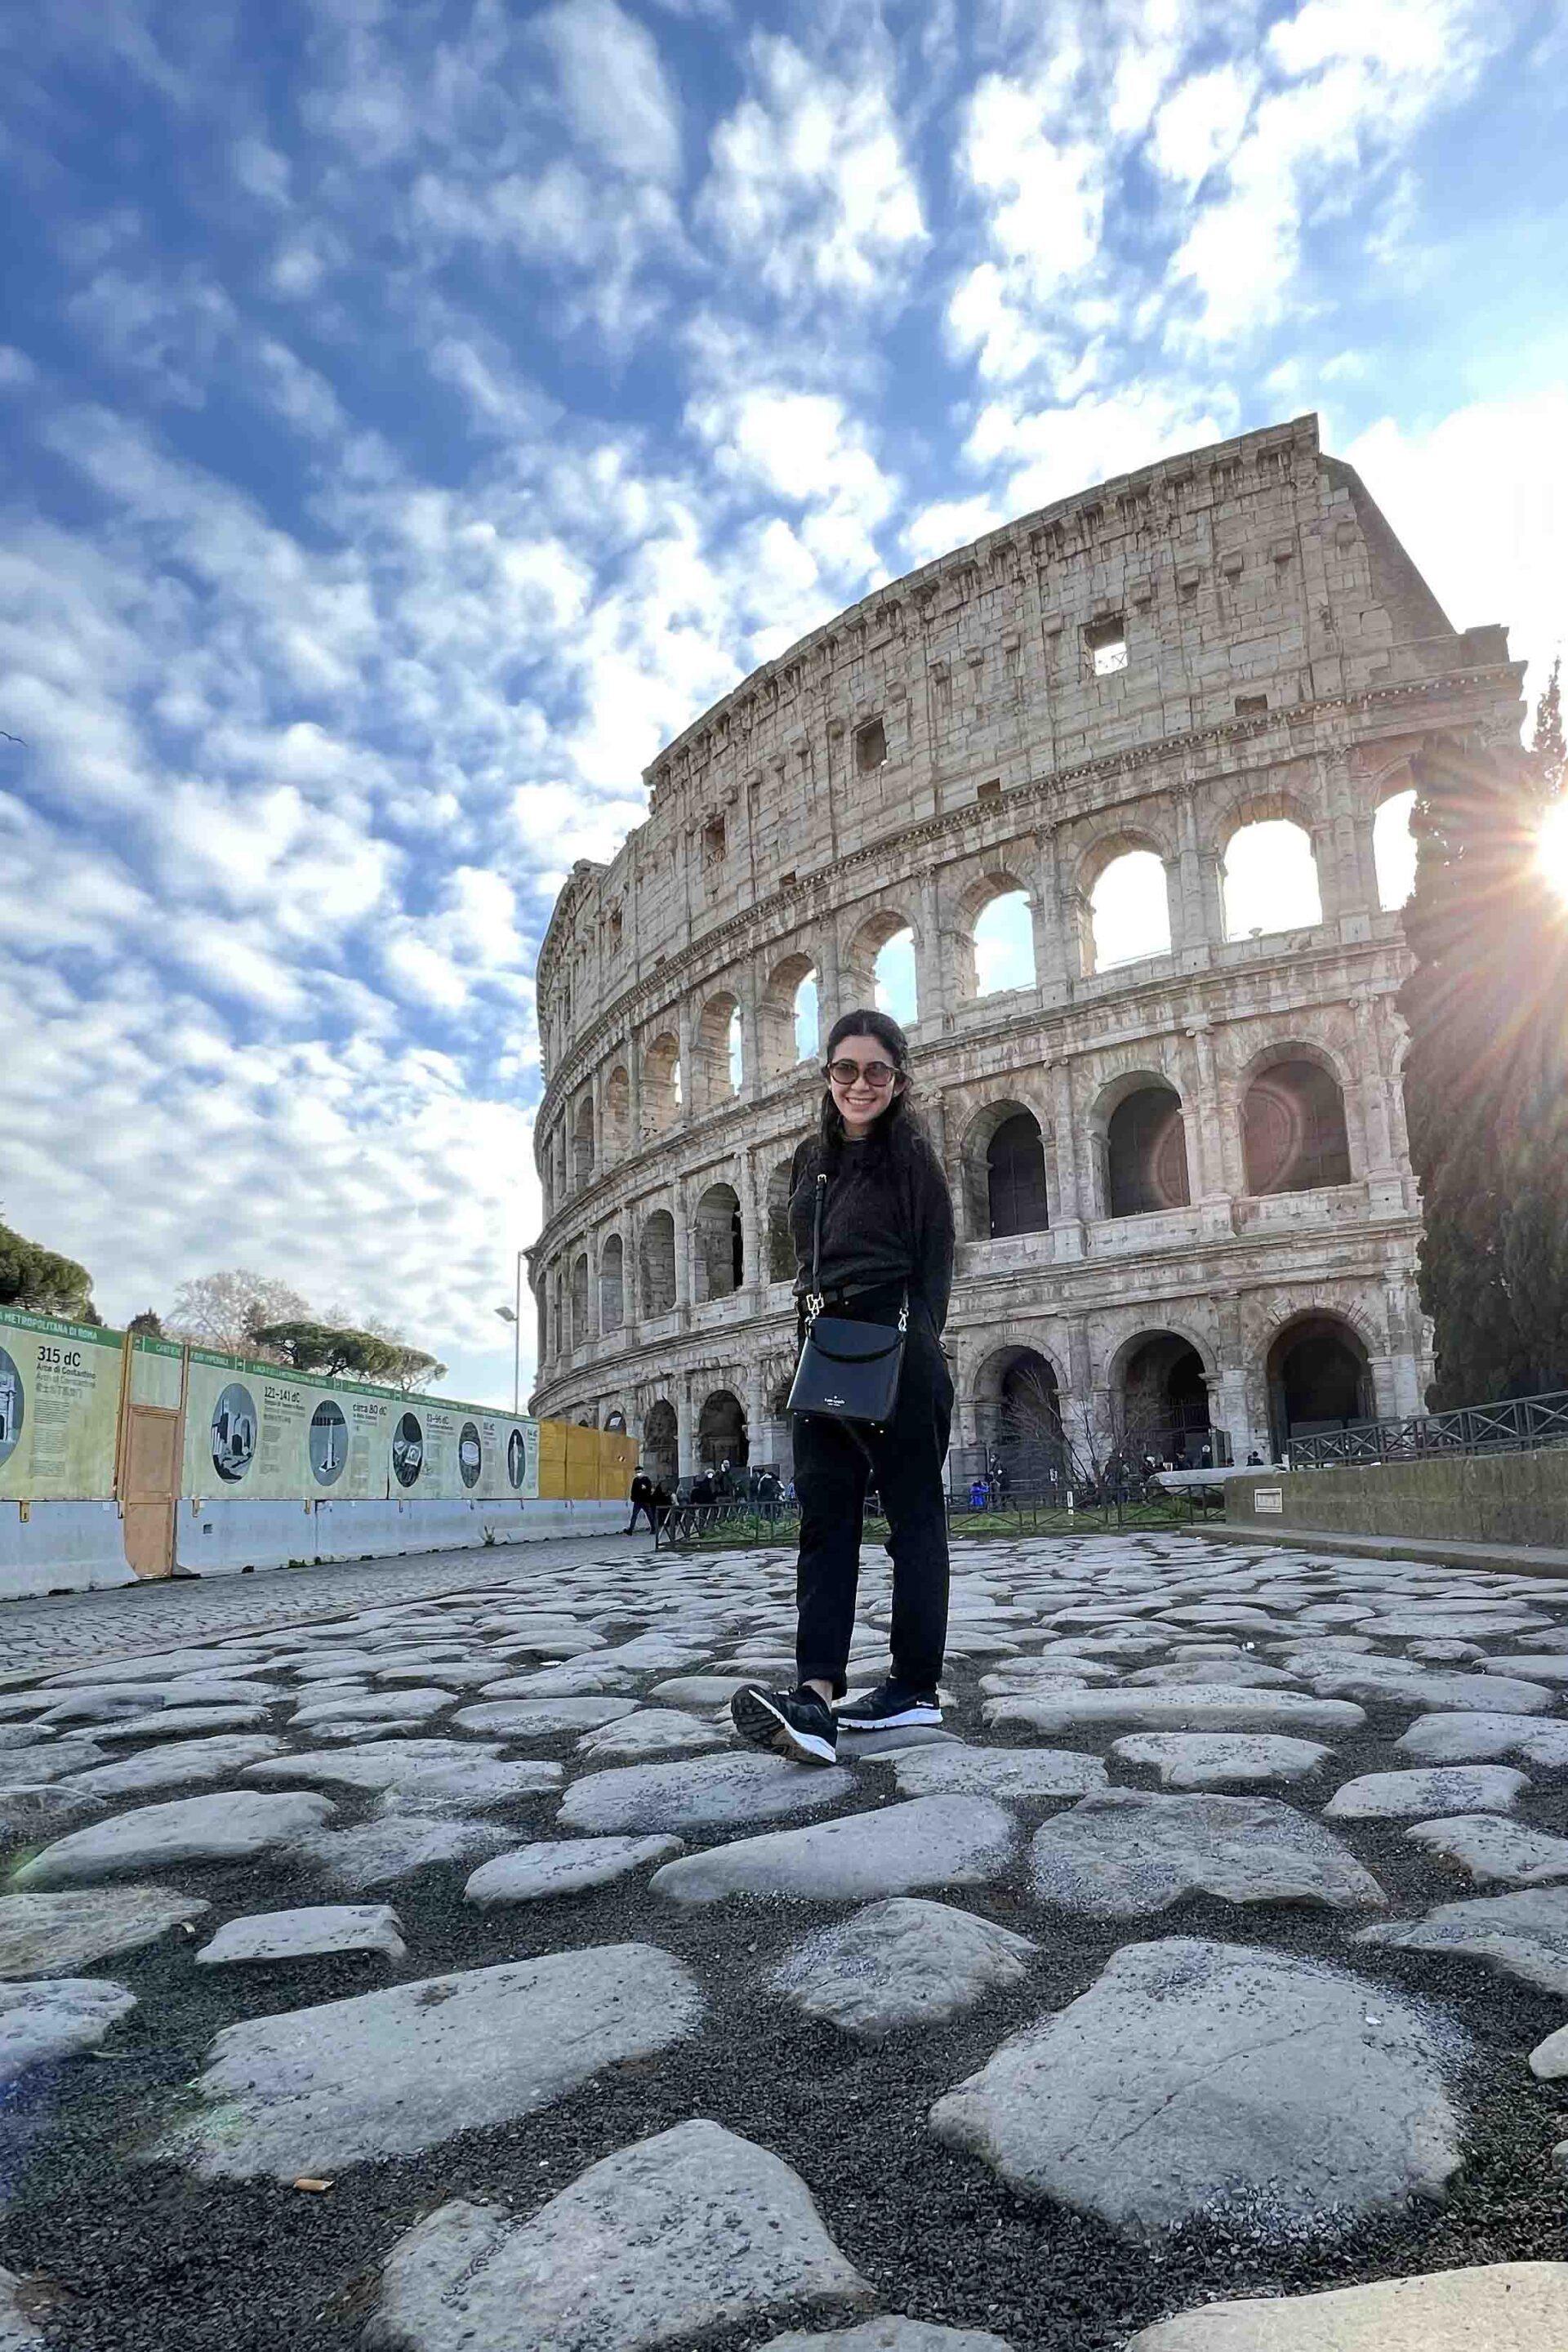 Para Roma, com Amor: a origem (e as curiosidades) do Coliseu